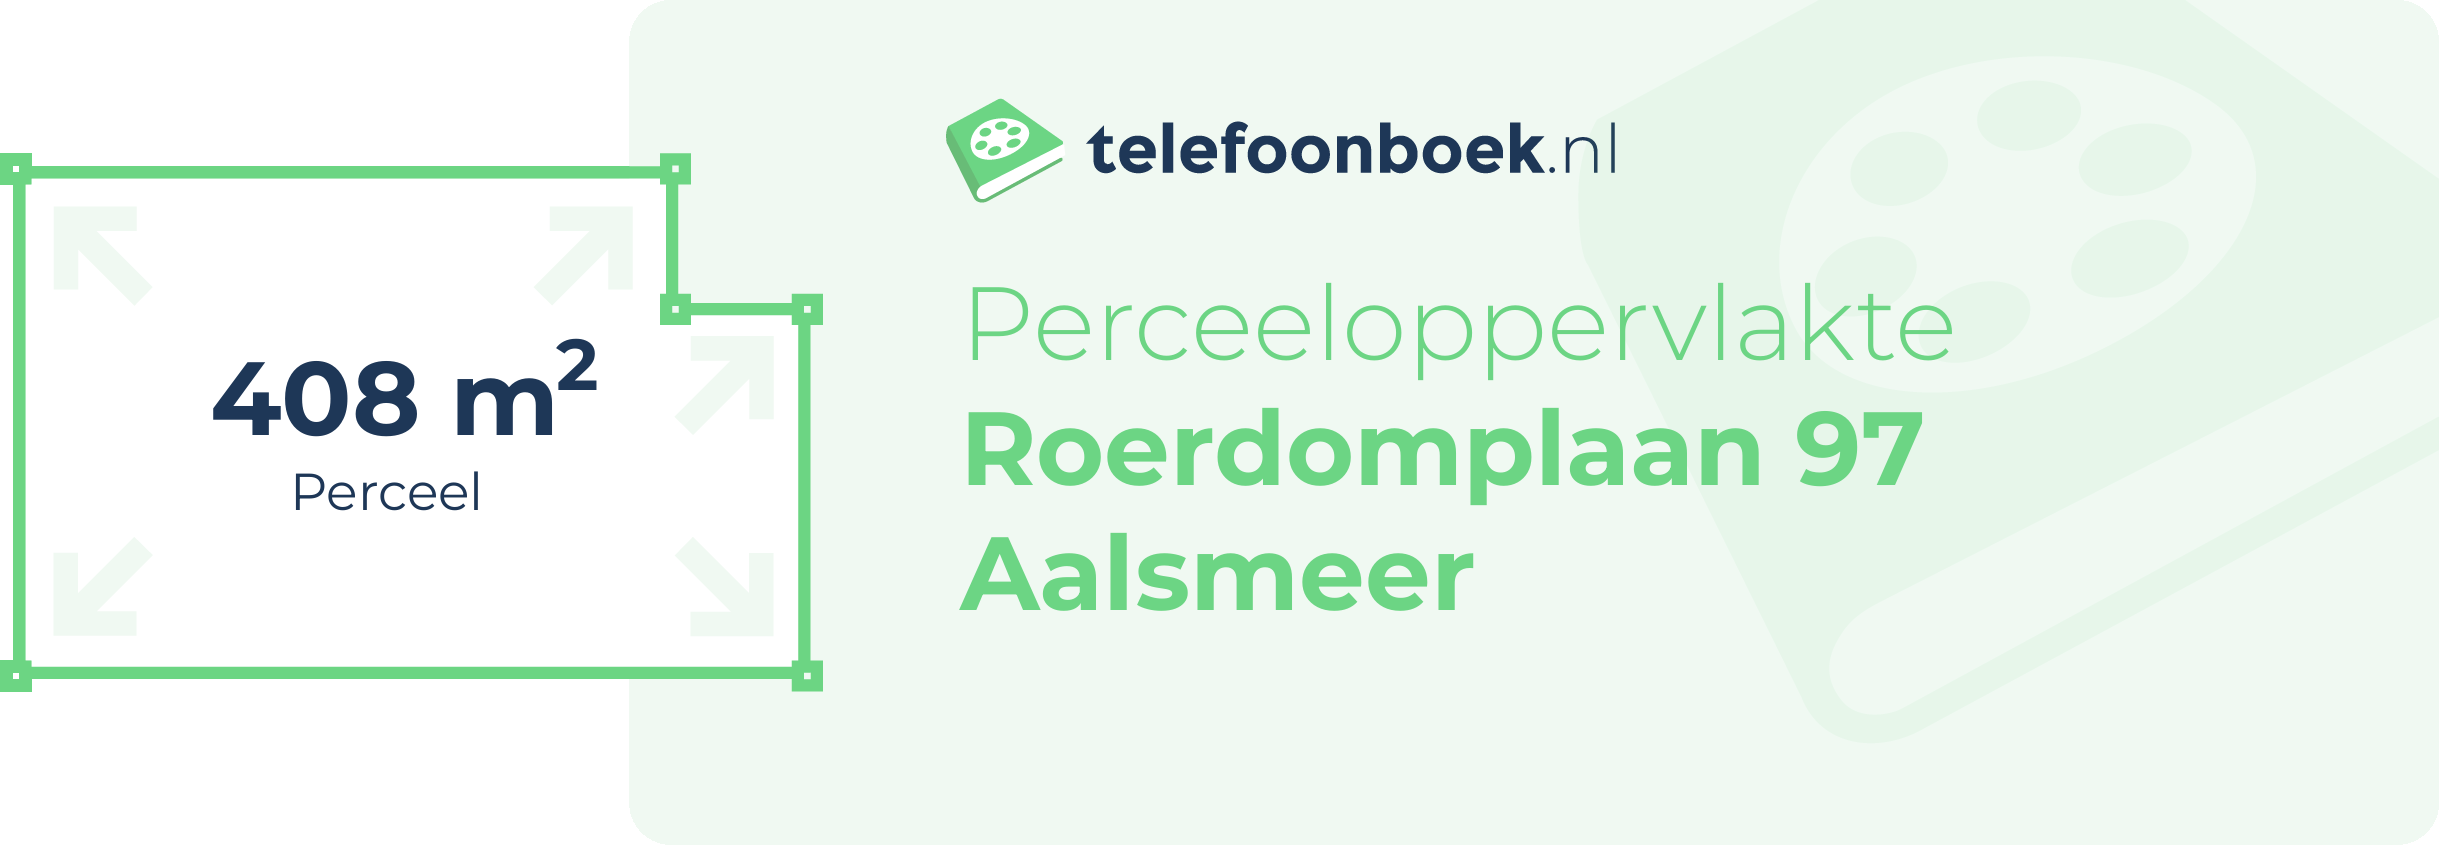 Perceeloppervlakte Roerdomplaan 97 Aalsmeer